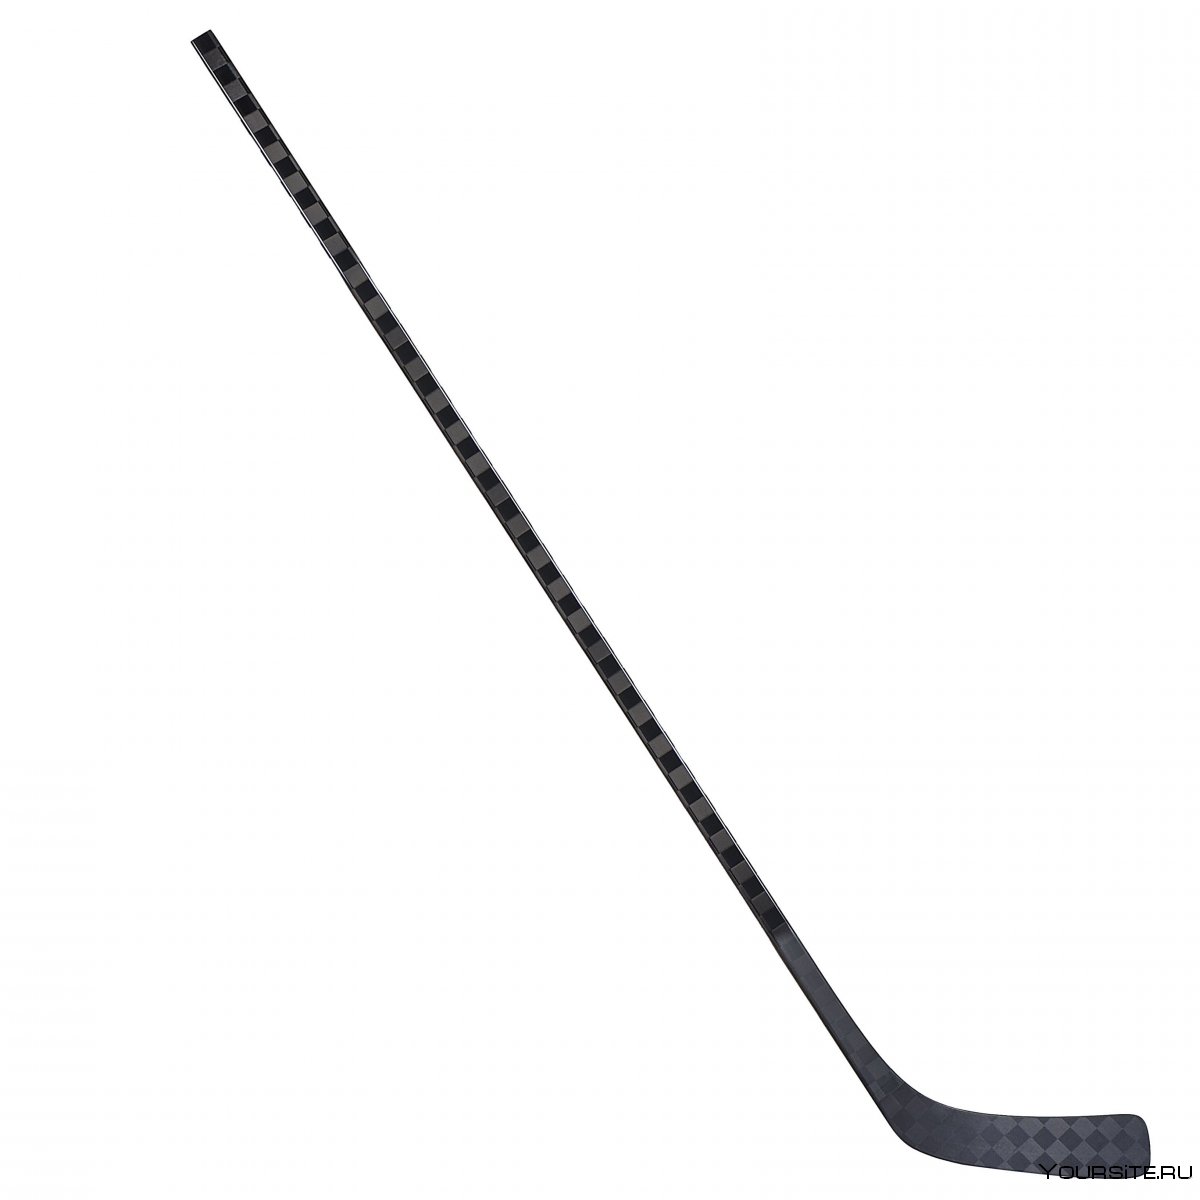 Хоккейная клюшка Bauer Supreme 1s Grip Stick 132 см, pm9